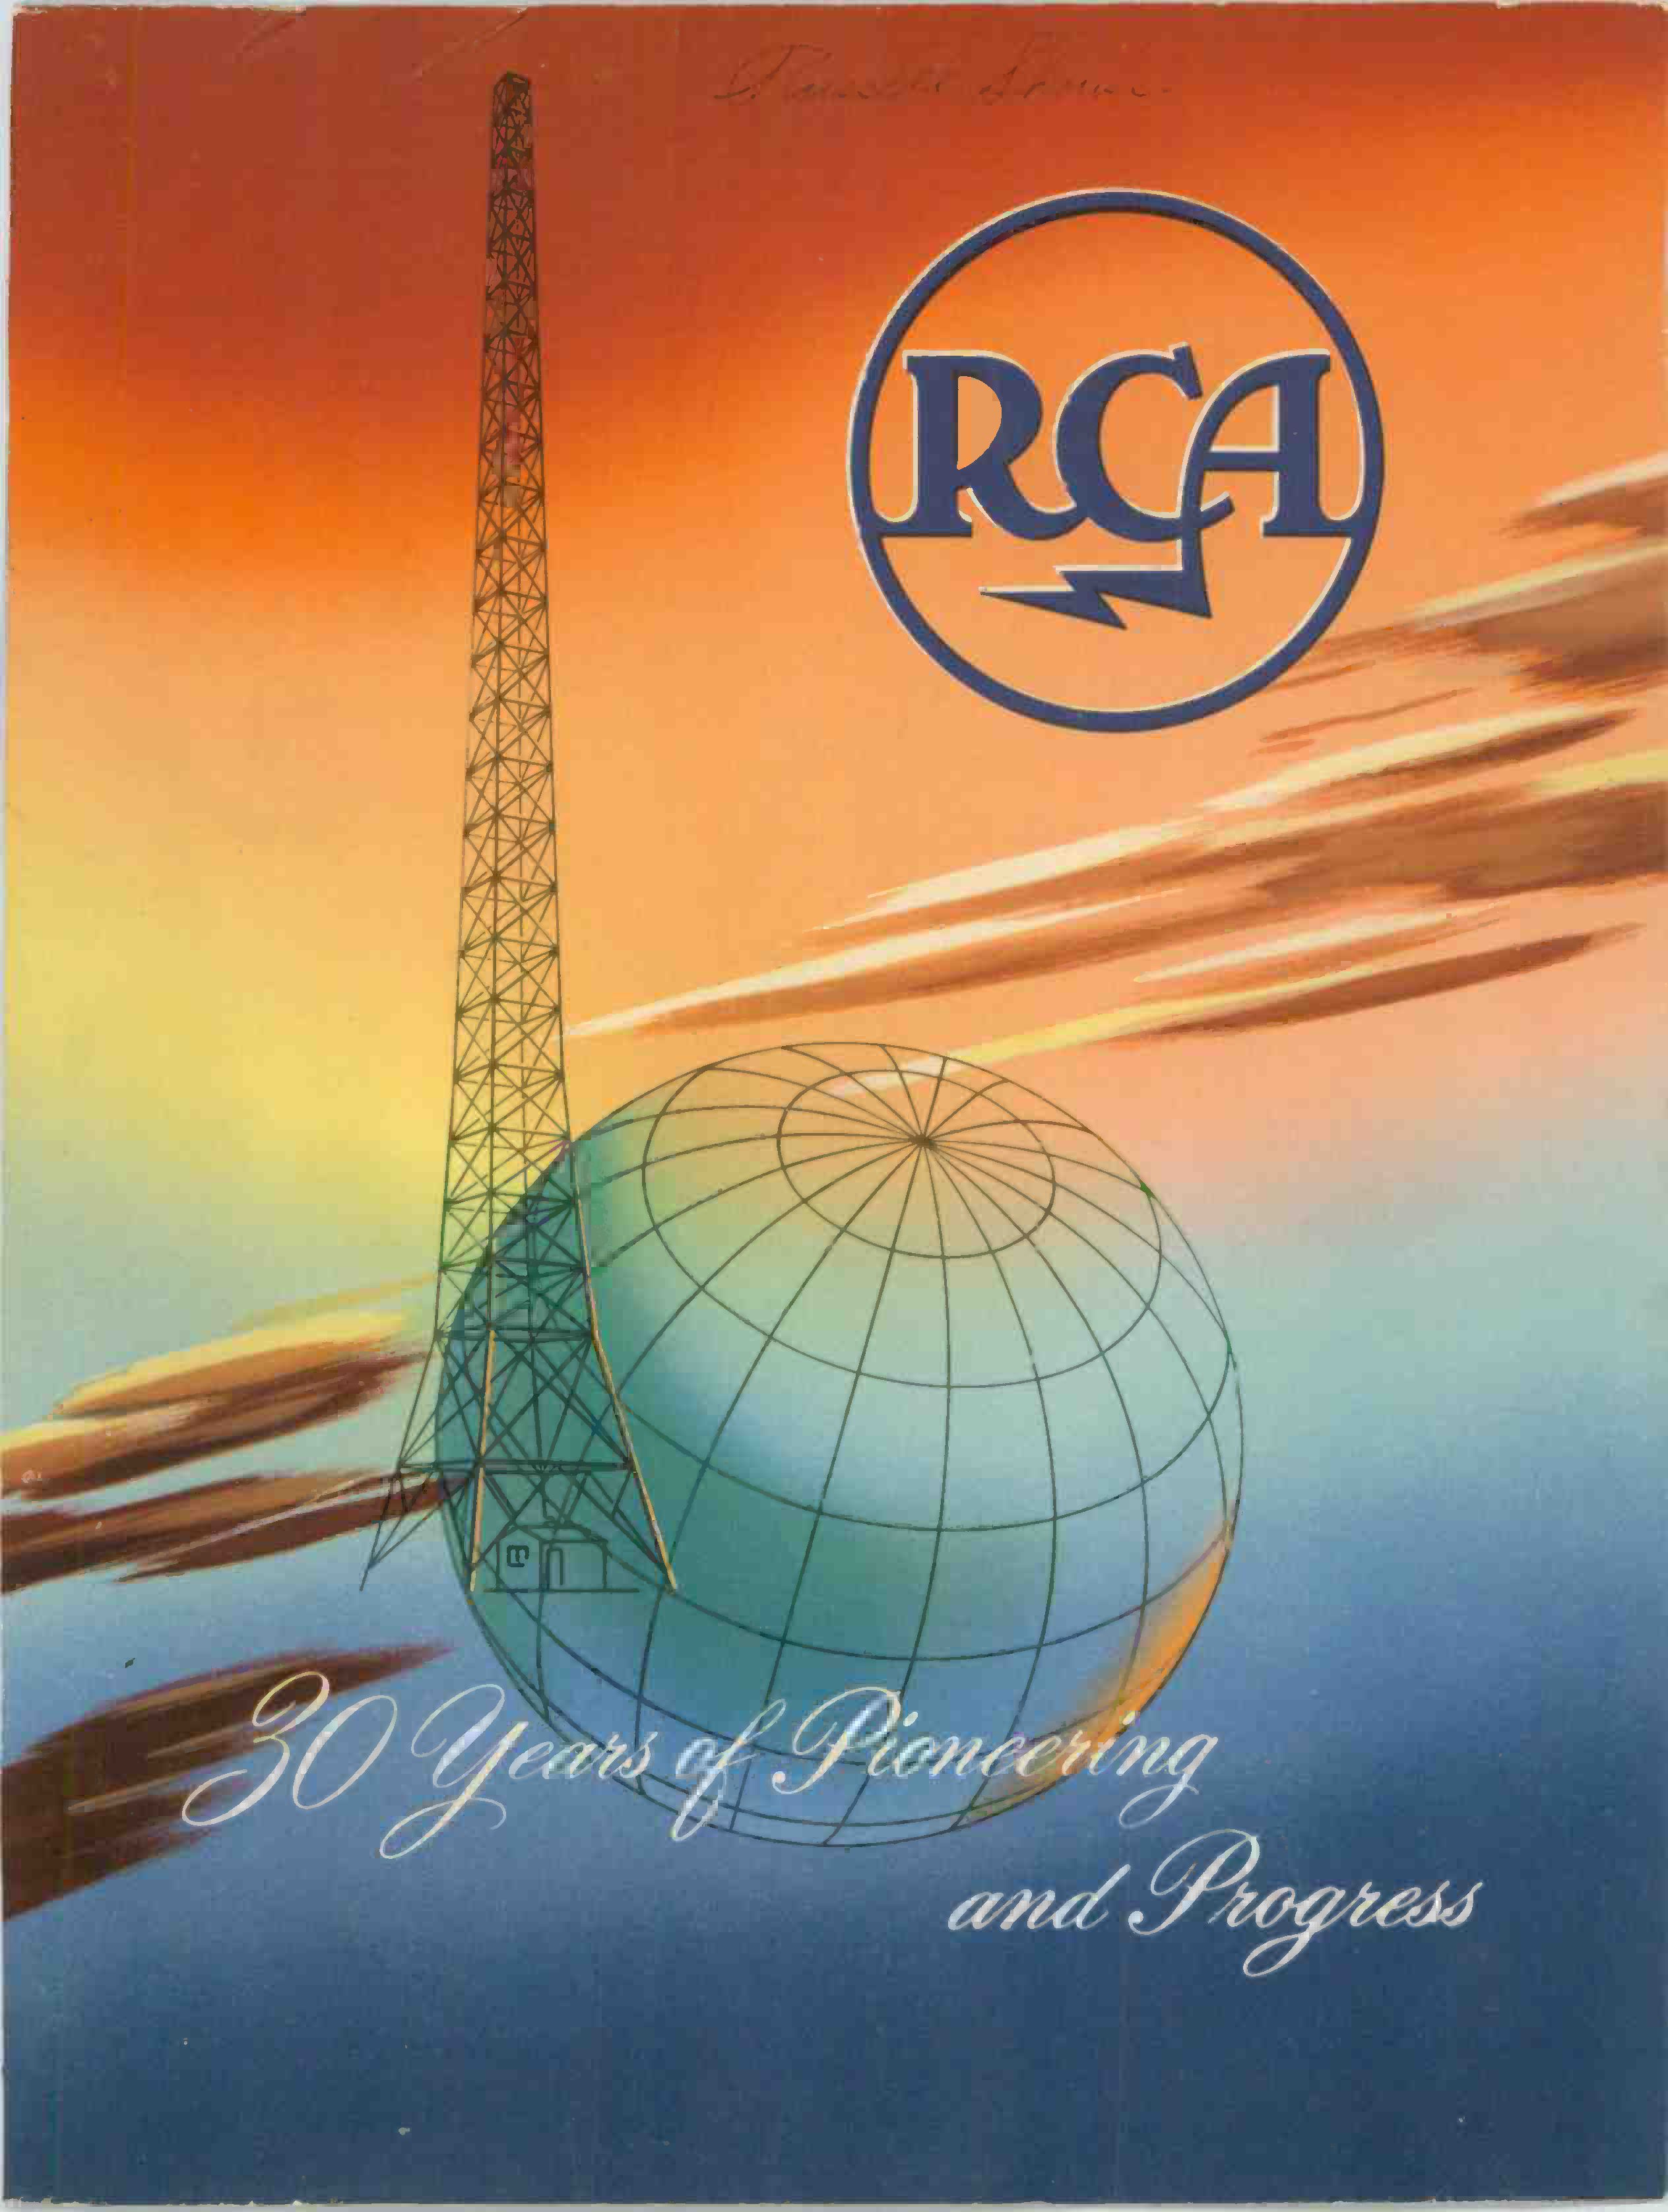 30 Jahre RCA, 1949, 77 Seiten